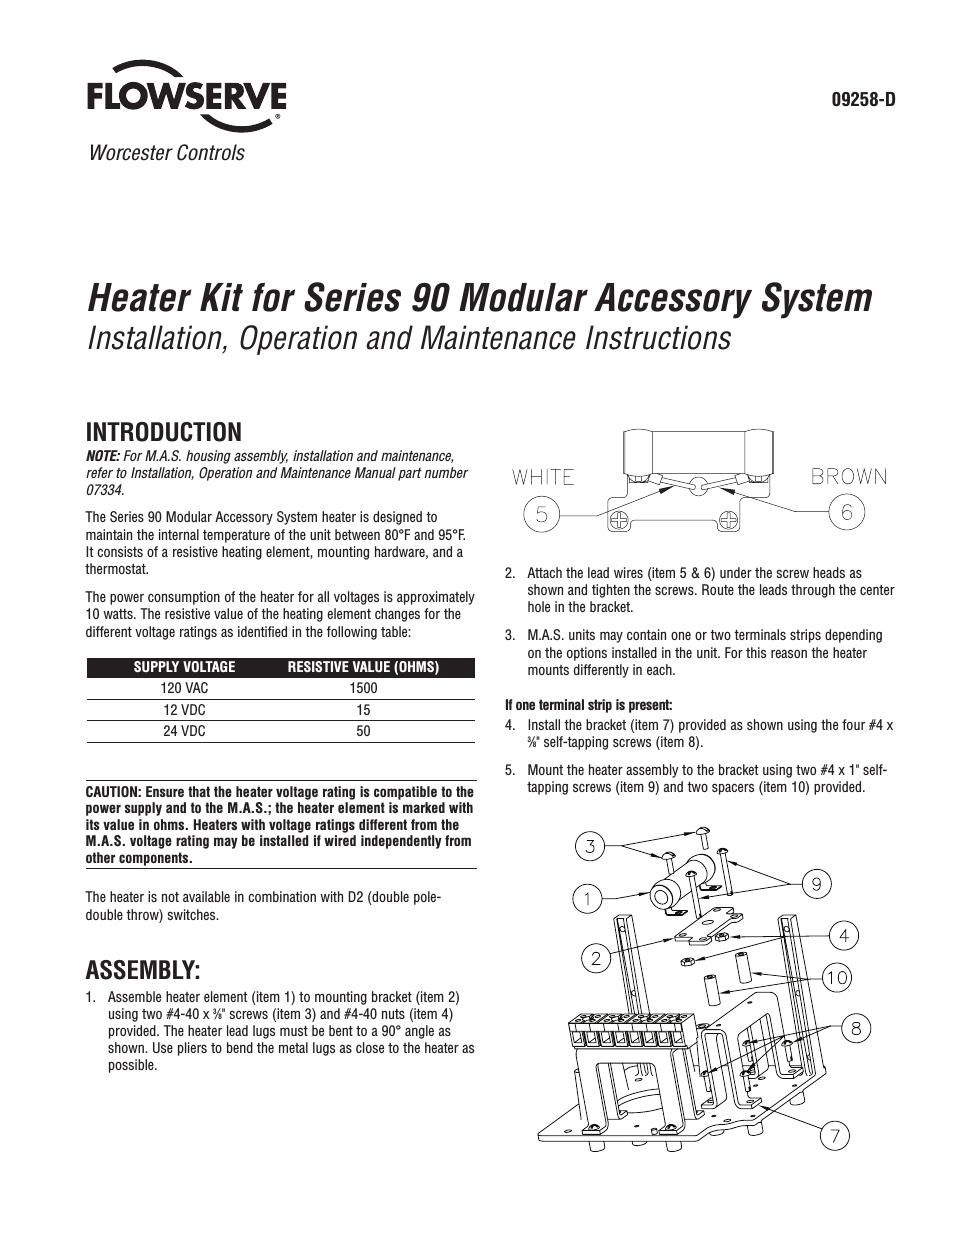 90 Series Heater Kit